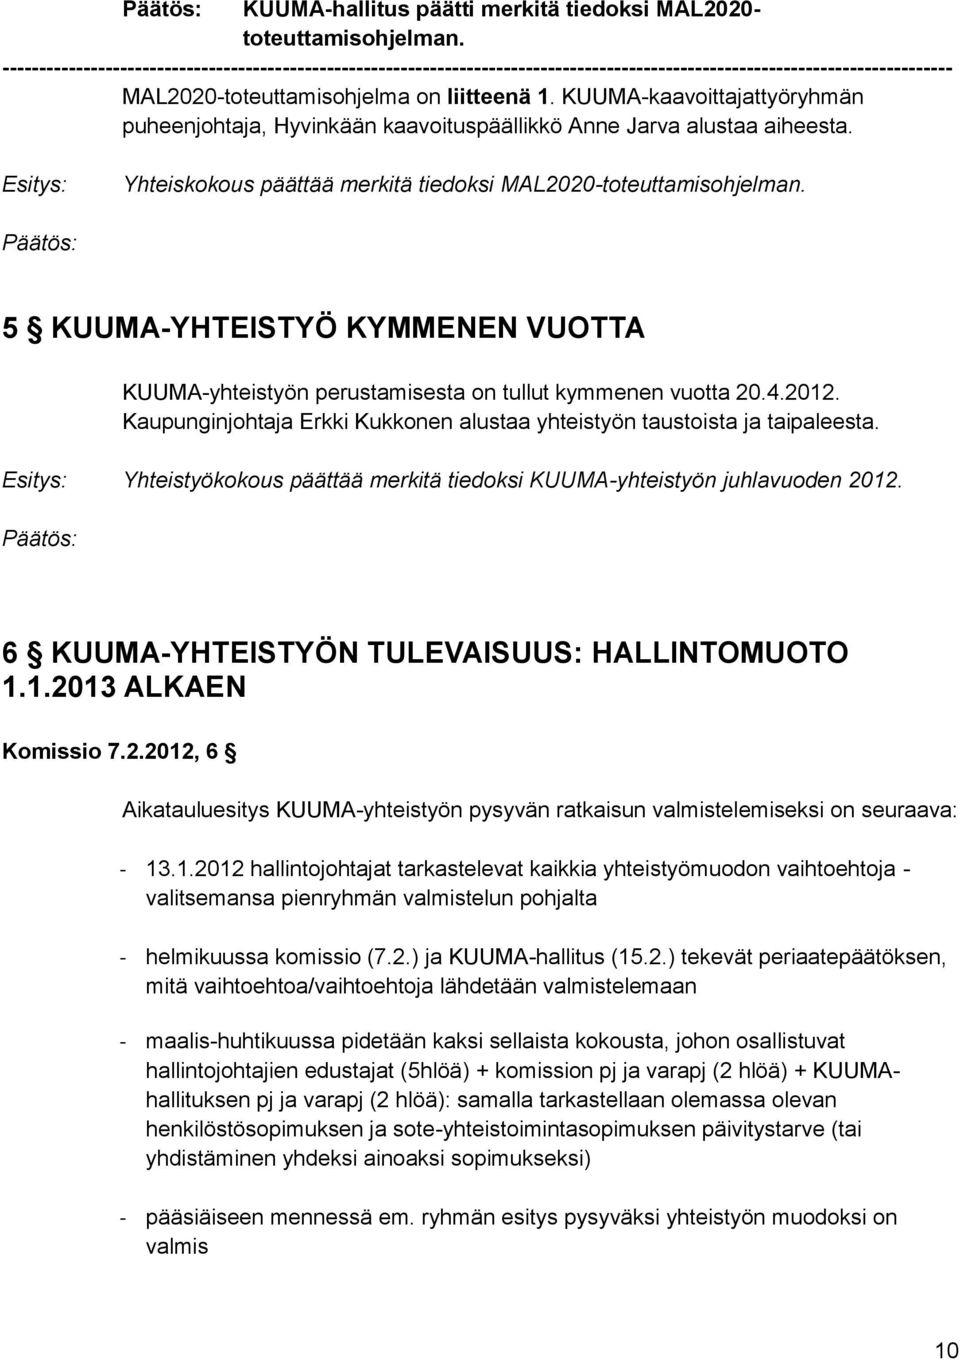 5 KUUMA-YHTEISTYÖ KYMMENEN VUOTTA KUUMA-yhteistyön perustamisesta on tullut kymmenen vuotta 20.4.2012. Kaupunginjohtaja Erkki Kukkonen alustaa yhteistyön taustoista ja taipaleesta.